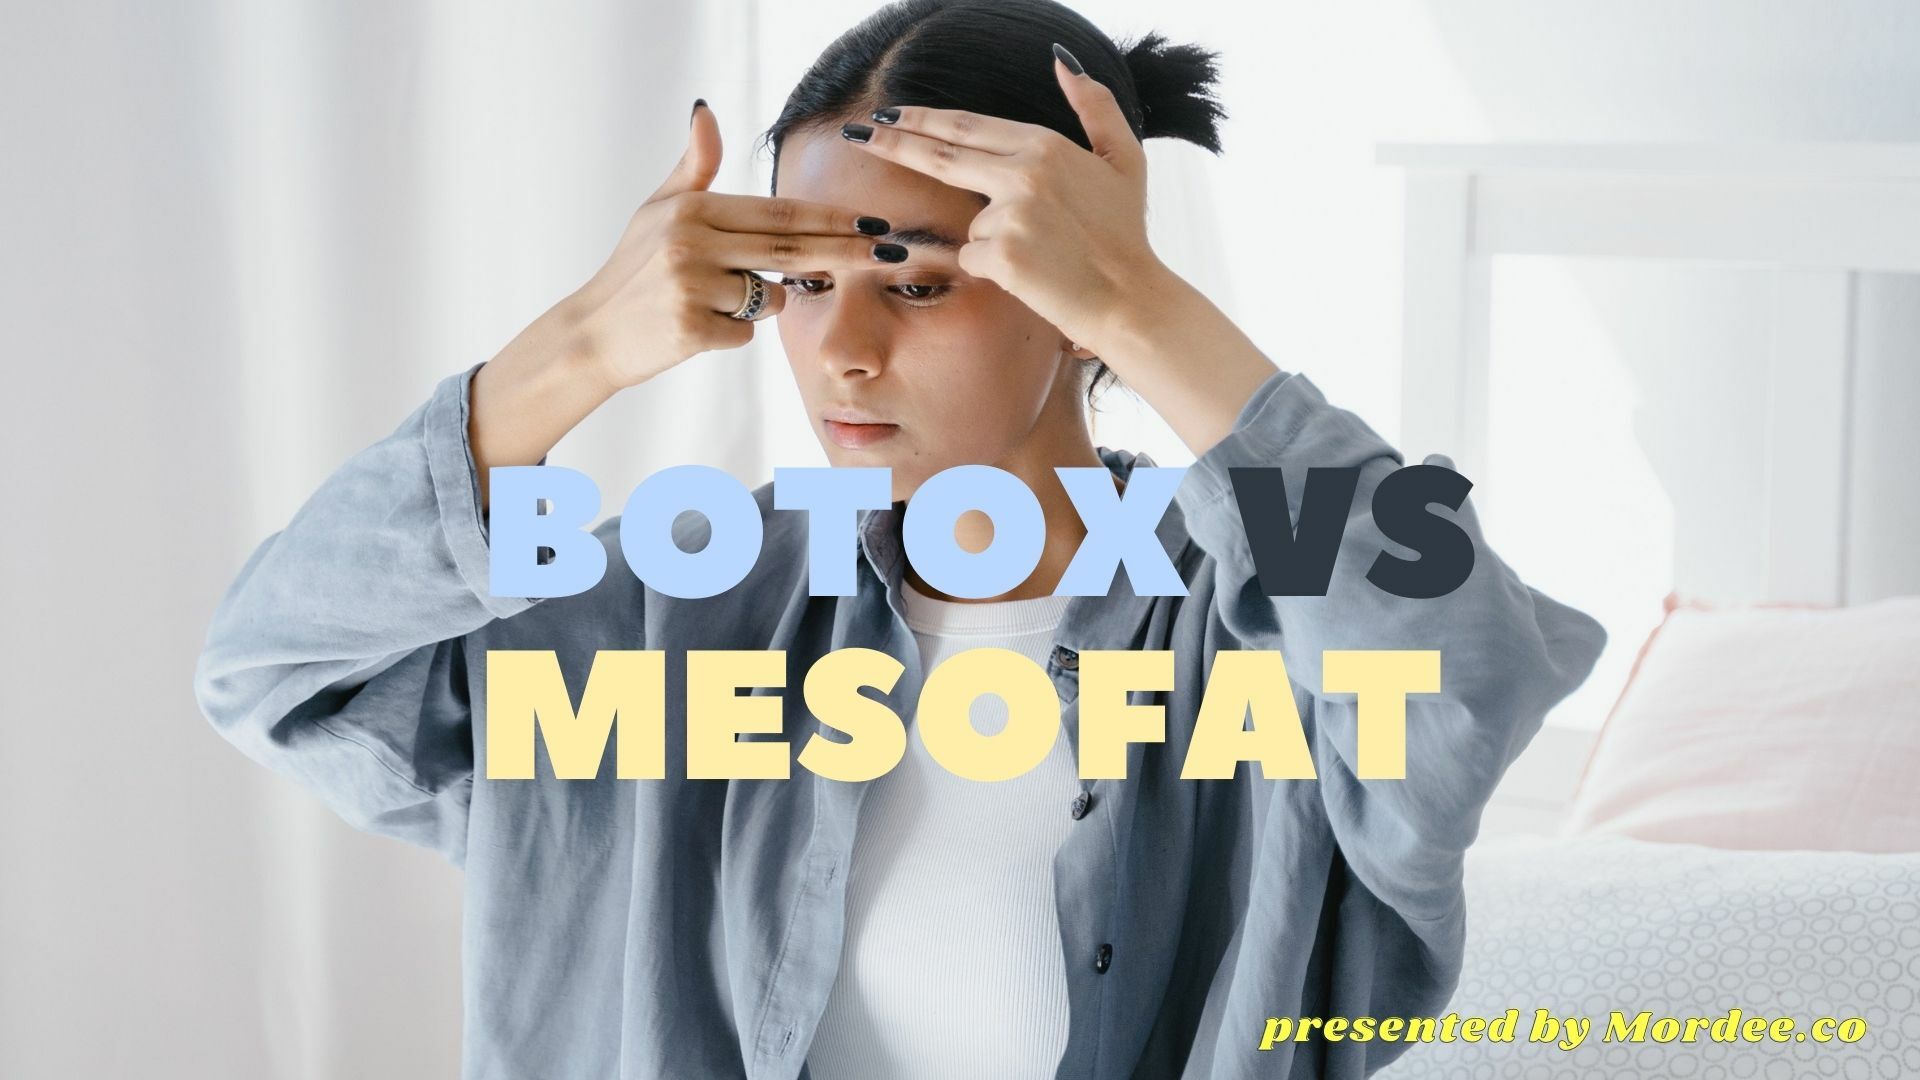 ความแตกต่างระหว่าง meso fat กับ Botox คือ